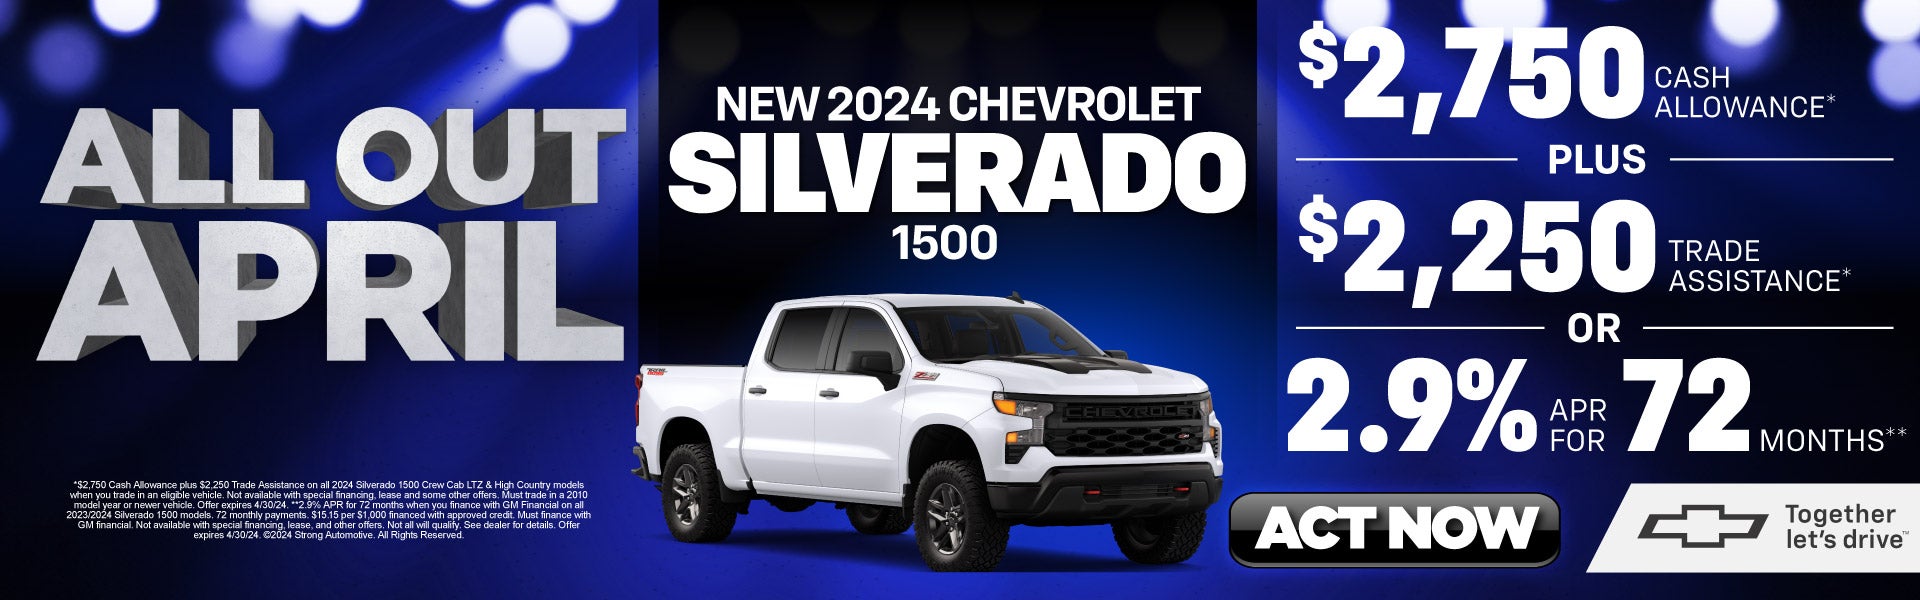 2024 chevy silverado 1500 $2,750 cash allowance | act now